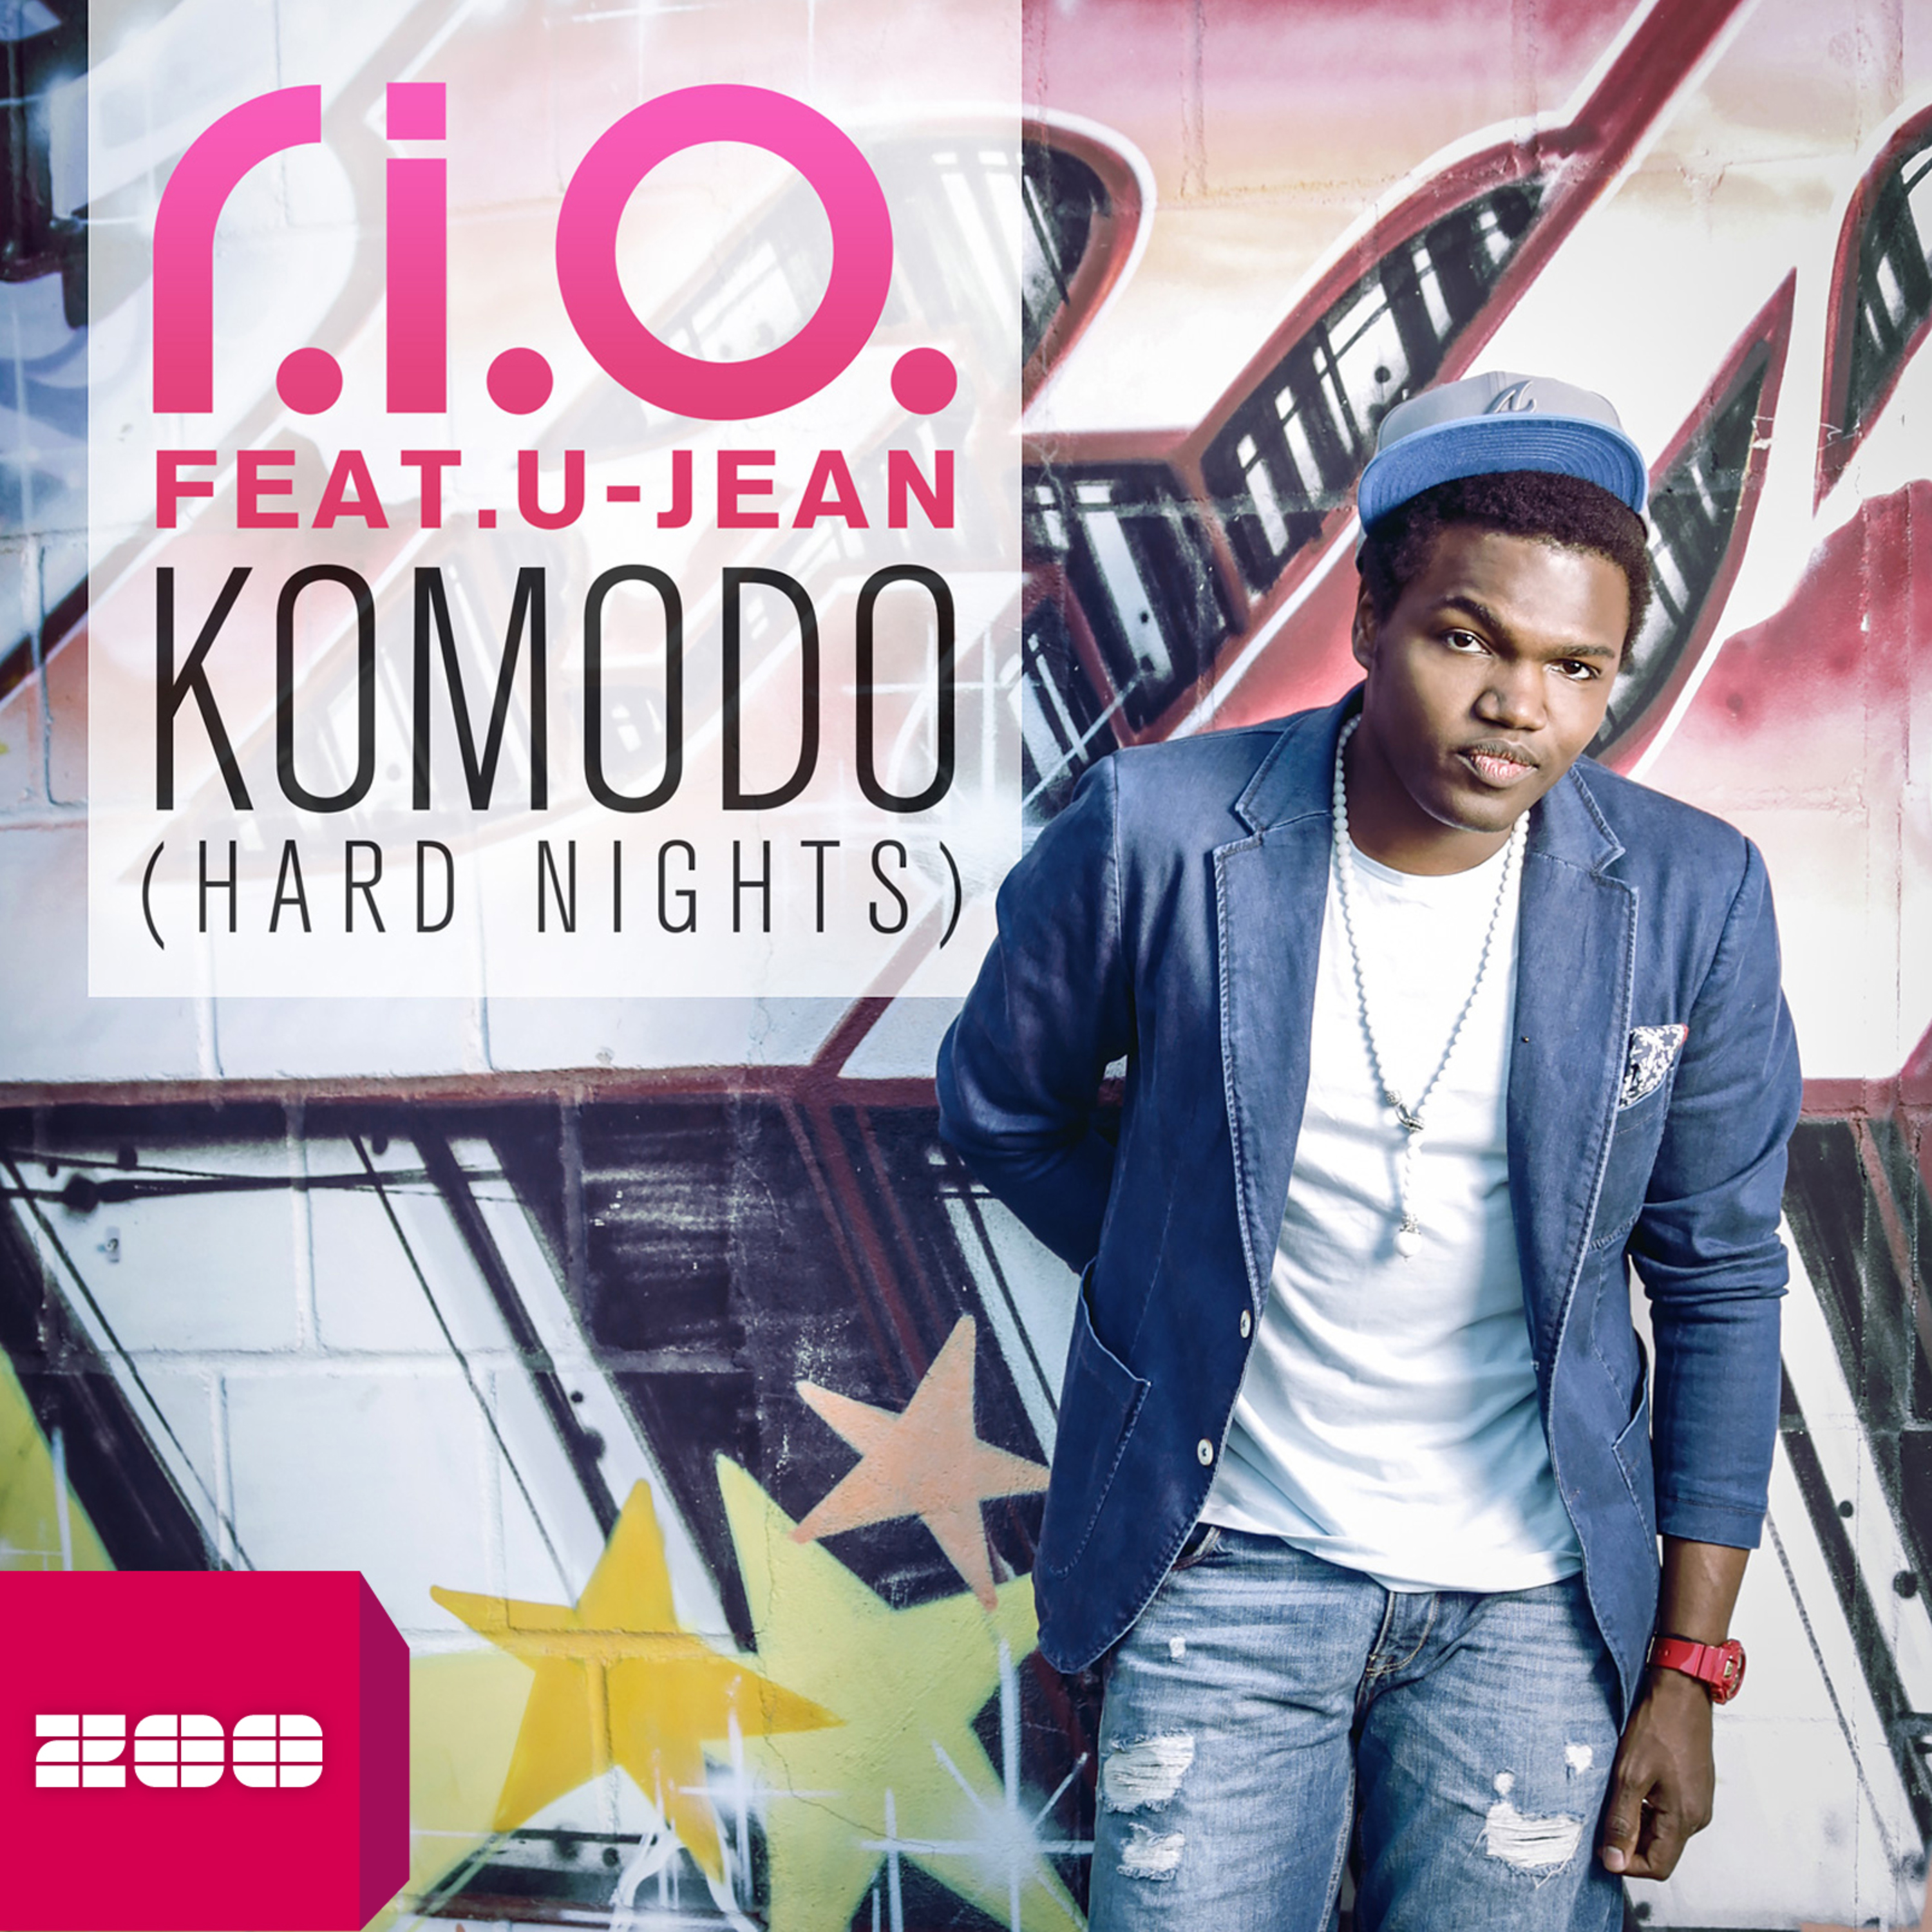 Komodo (Hard Nights) (Radio Edit)